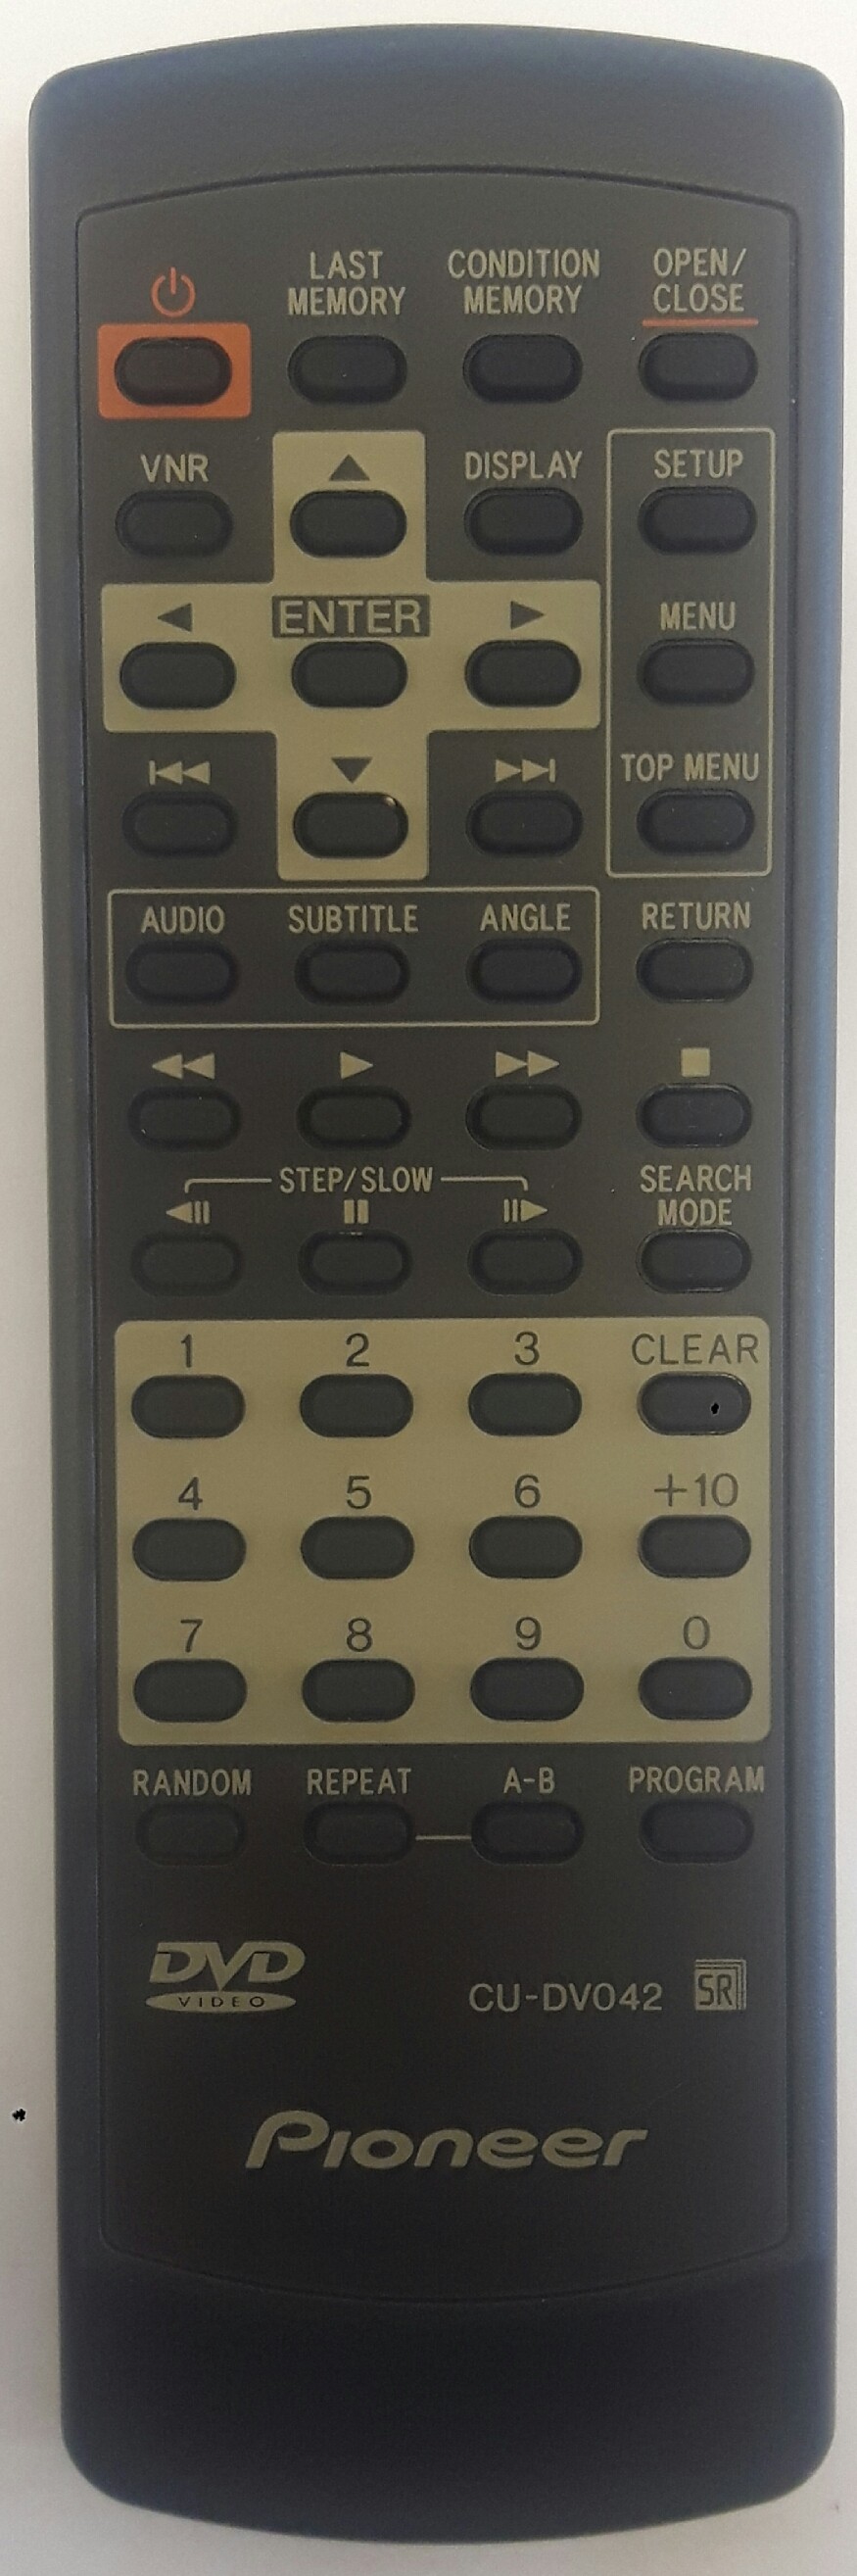 PIONEER DV525 Remote Control Original 